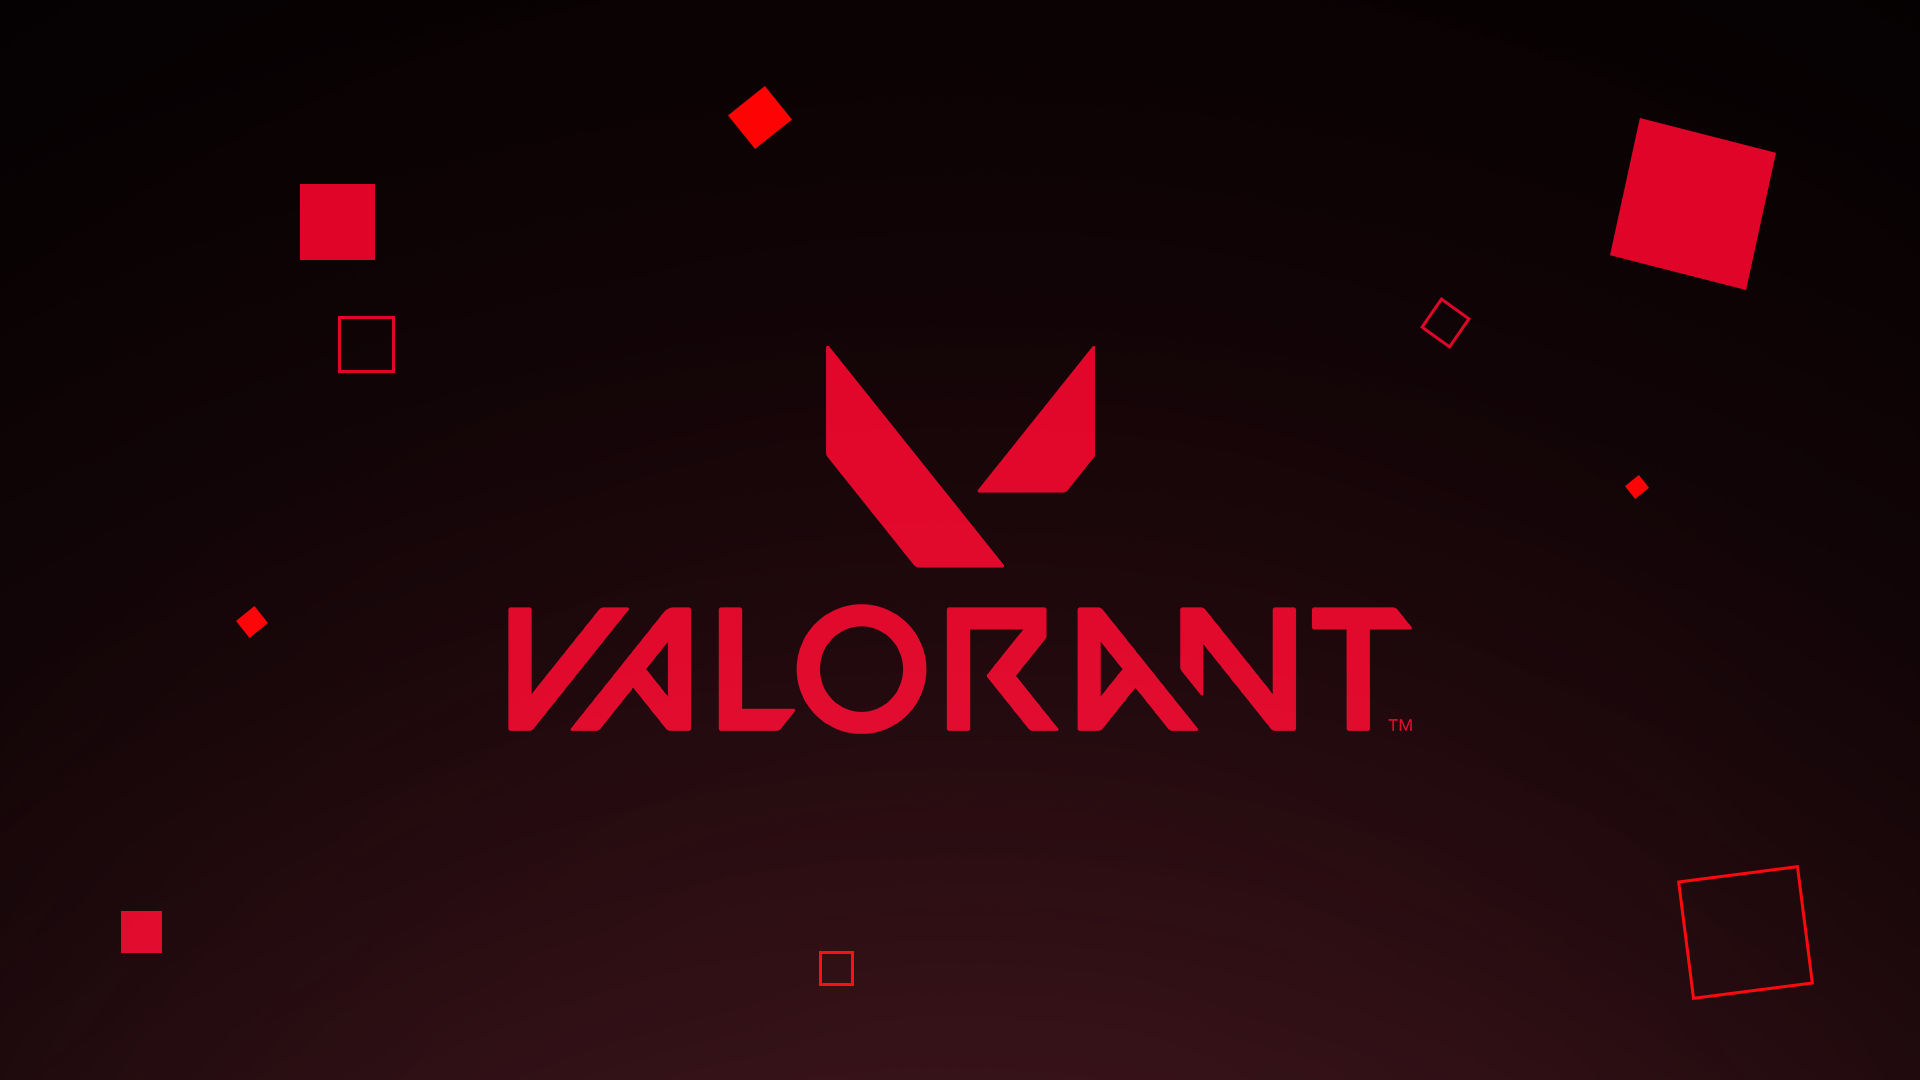 Valorant là một trò chơi bắn súng tuyệt vời với đồ họa đẹp mắt và lối chơi cuốn hút. Hãy xem hình ảnh liên quan để cảm nhận được sự hồi hộp và thách thức của trò chơi này!